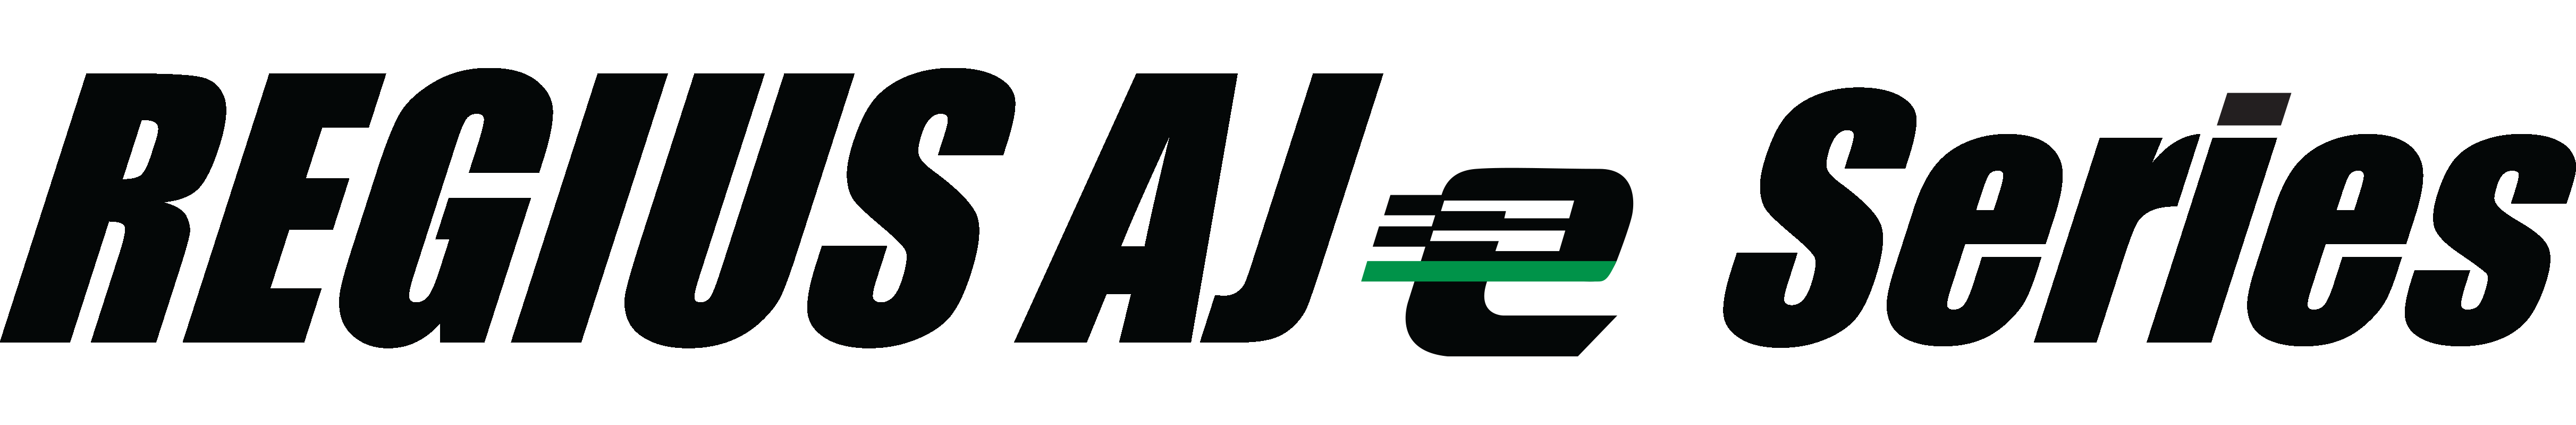 REGIUS AJe Series logo